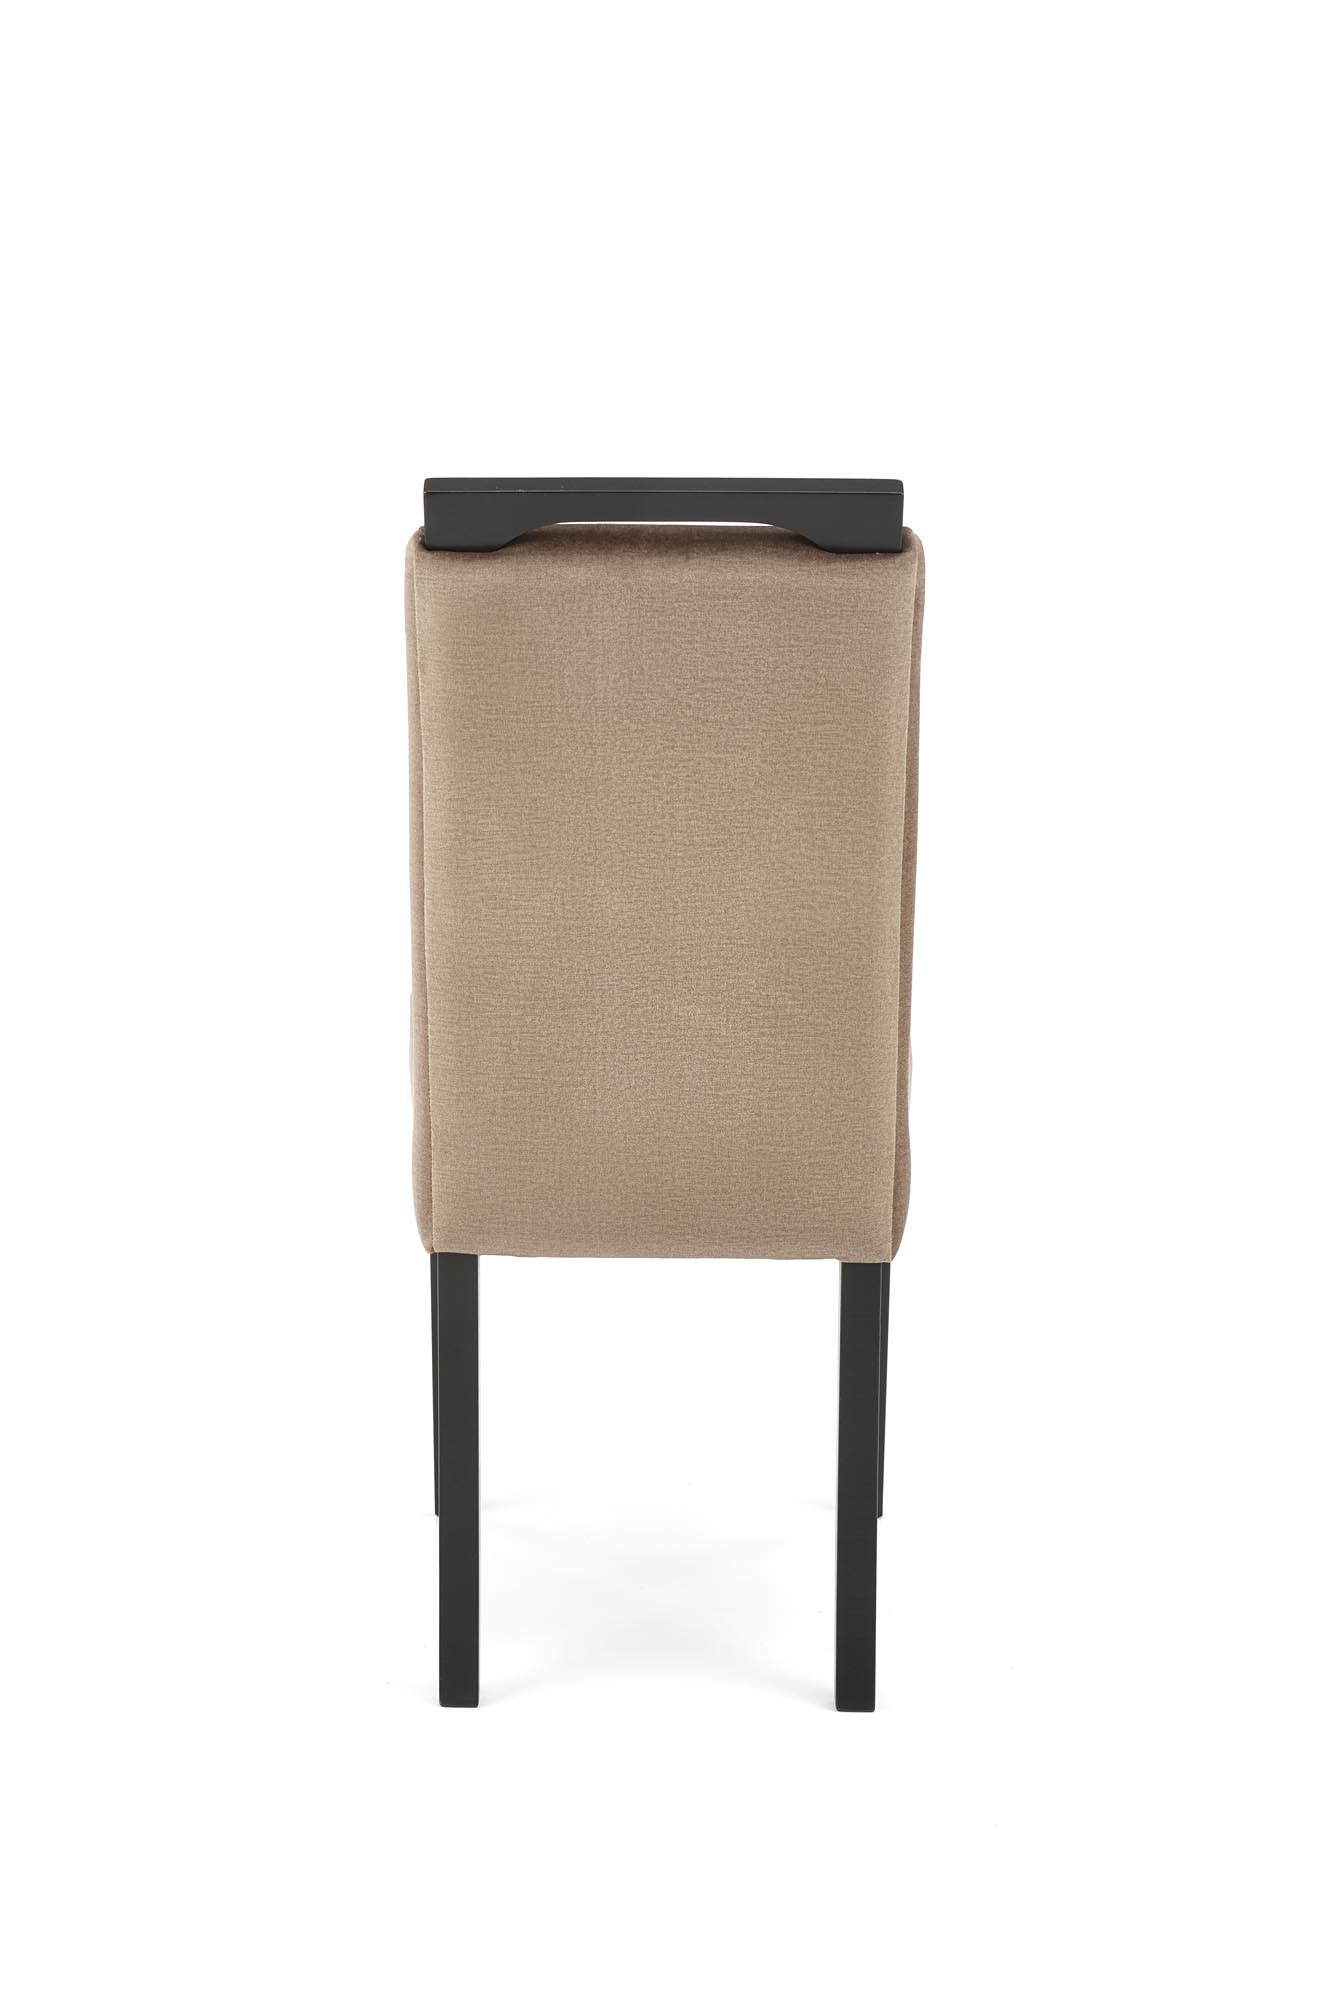 Krzesło tapicerowane Clarion 2 - czarny / beż krzesło tapicerowane clarion 2 - czarny / beż